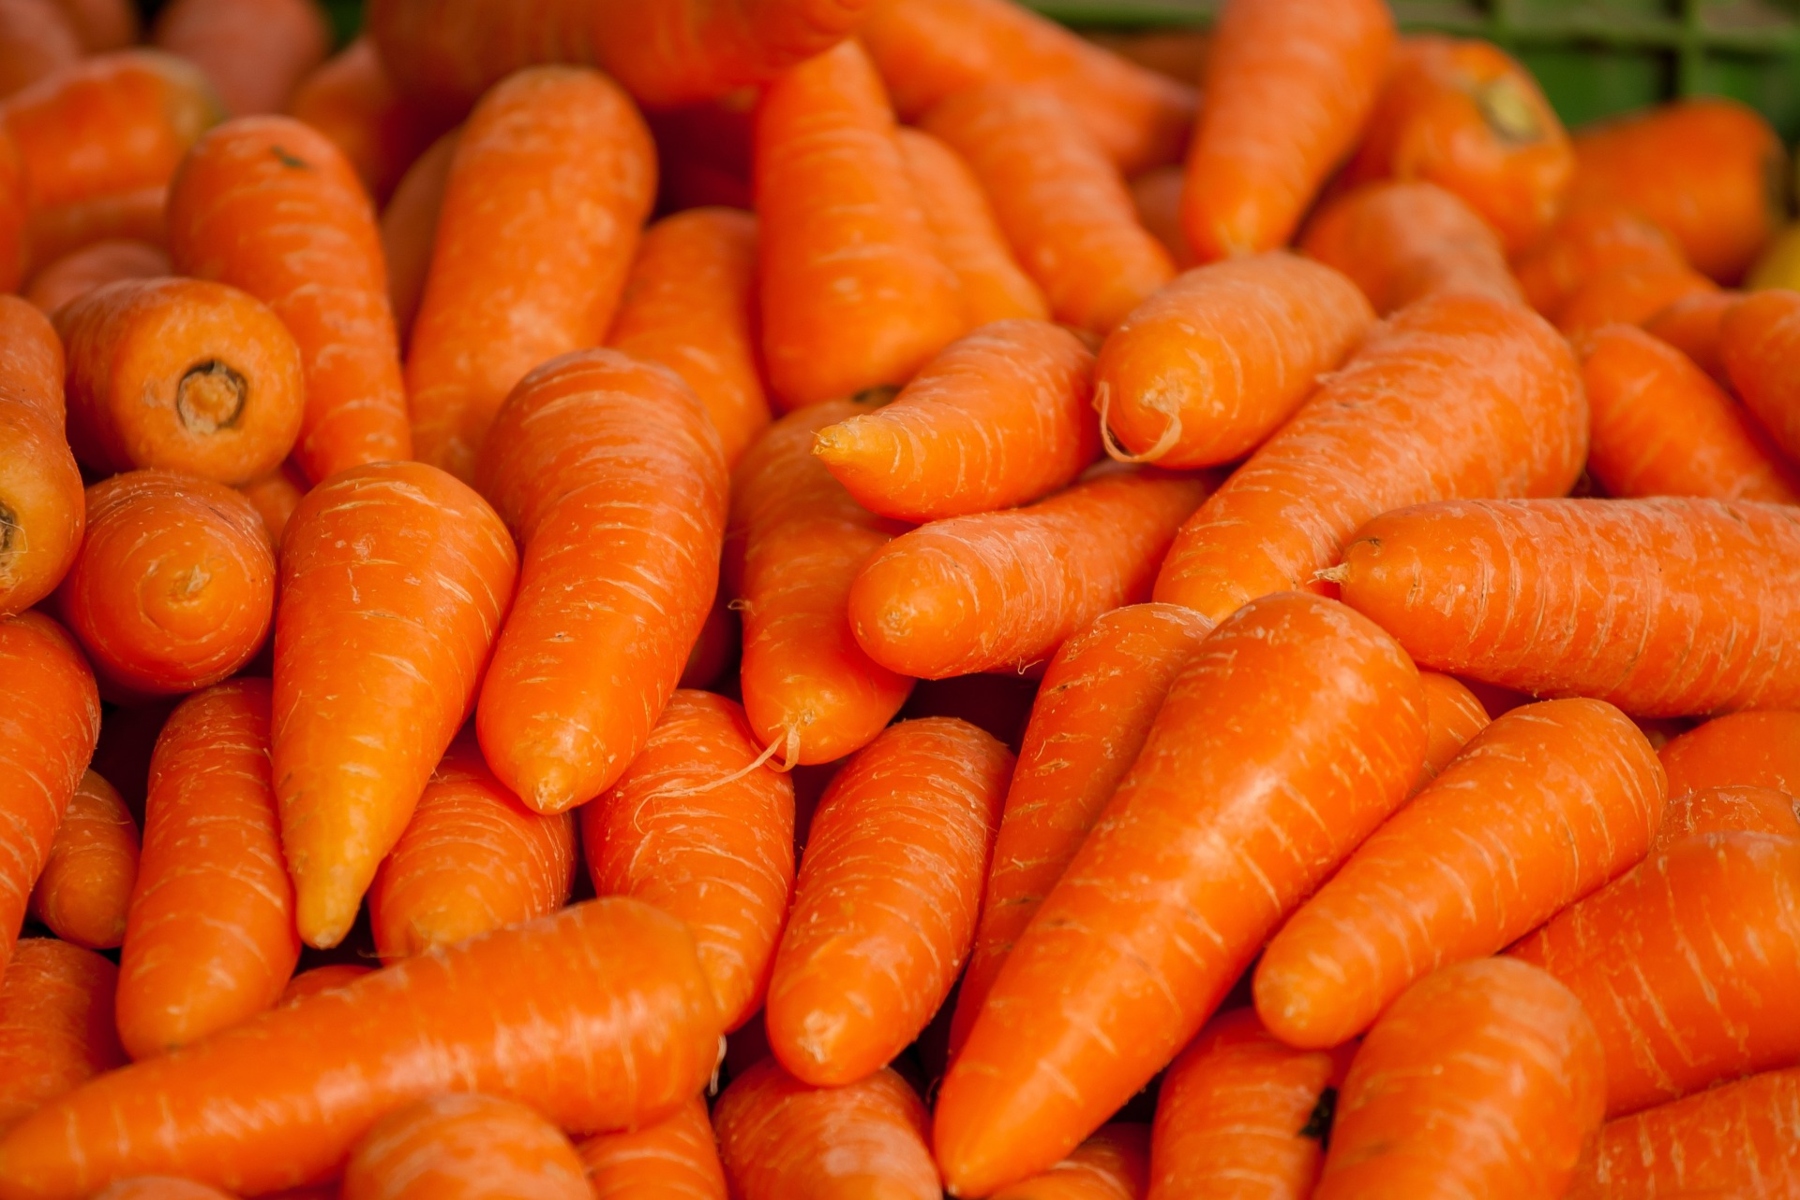 Καρότο συνταγή: Συνταγές με καρότο ως υγιεινές και νόστιμες λιχουδιές για τα παιδιά